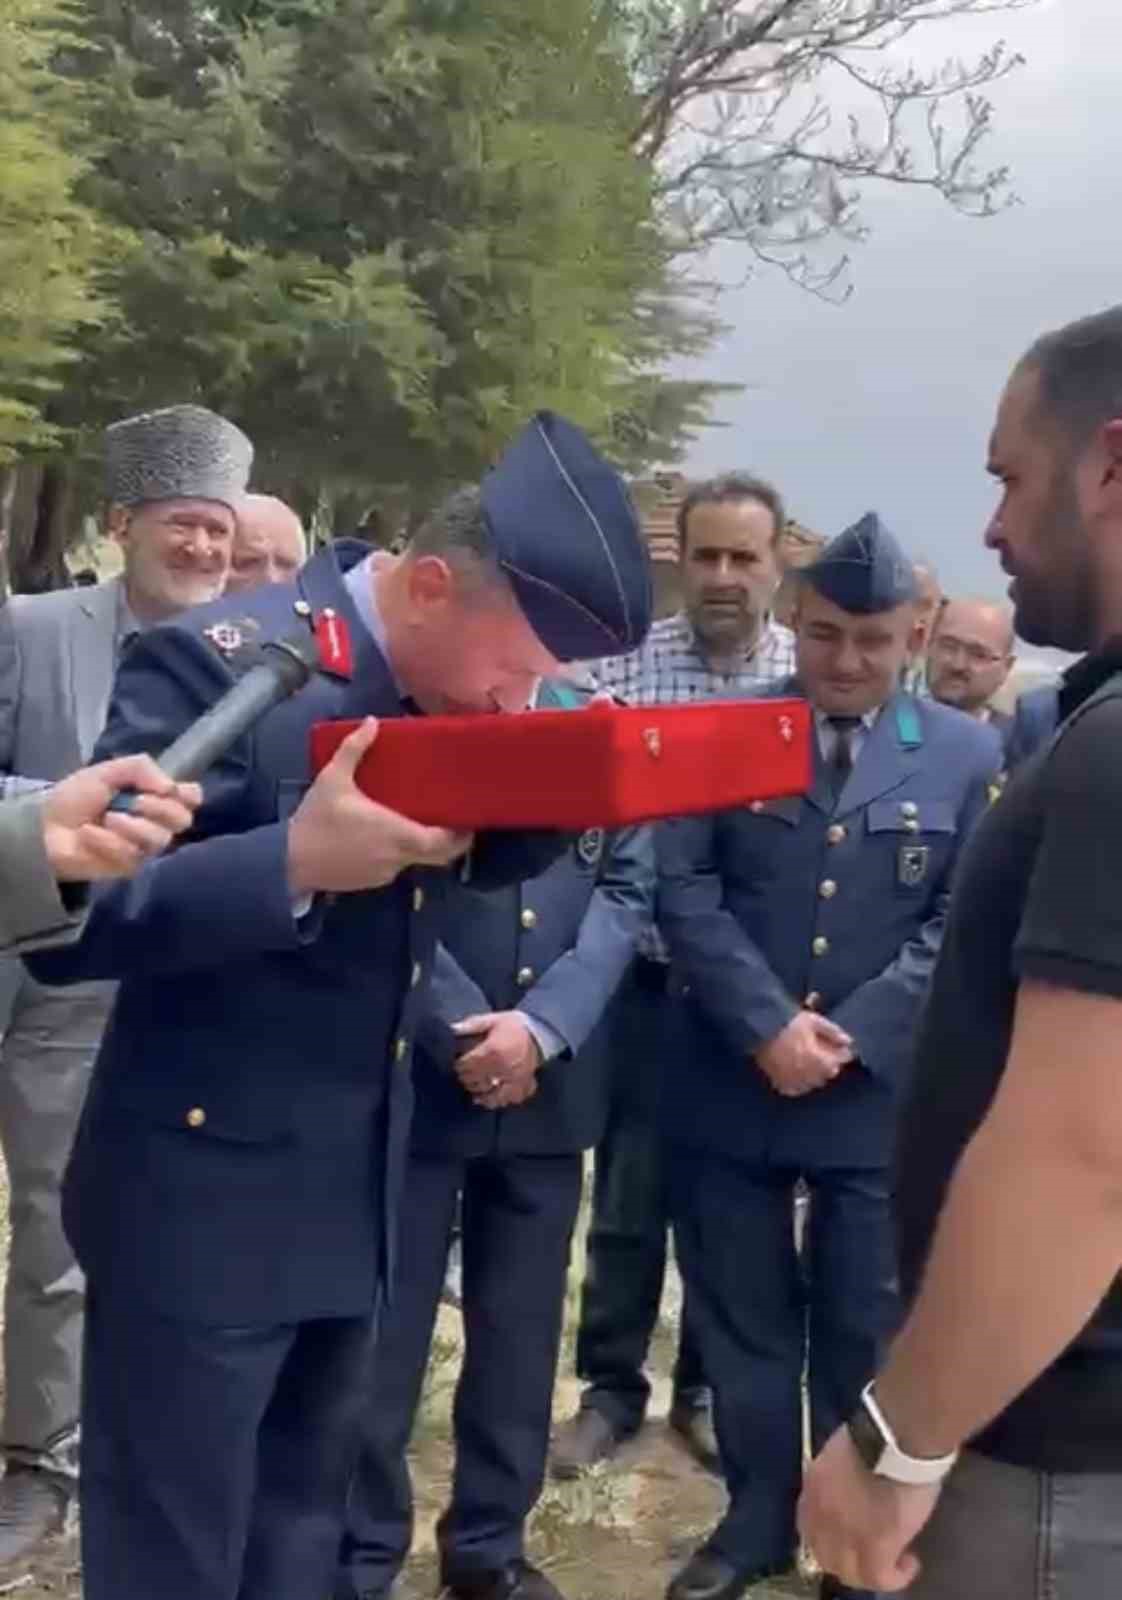 Kıbrıs gazisi askeri törenle son yolculuğuna uğurlandı